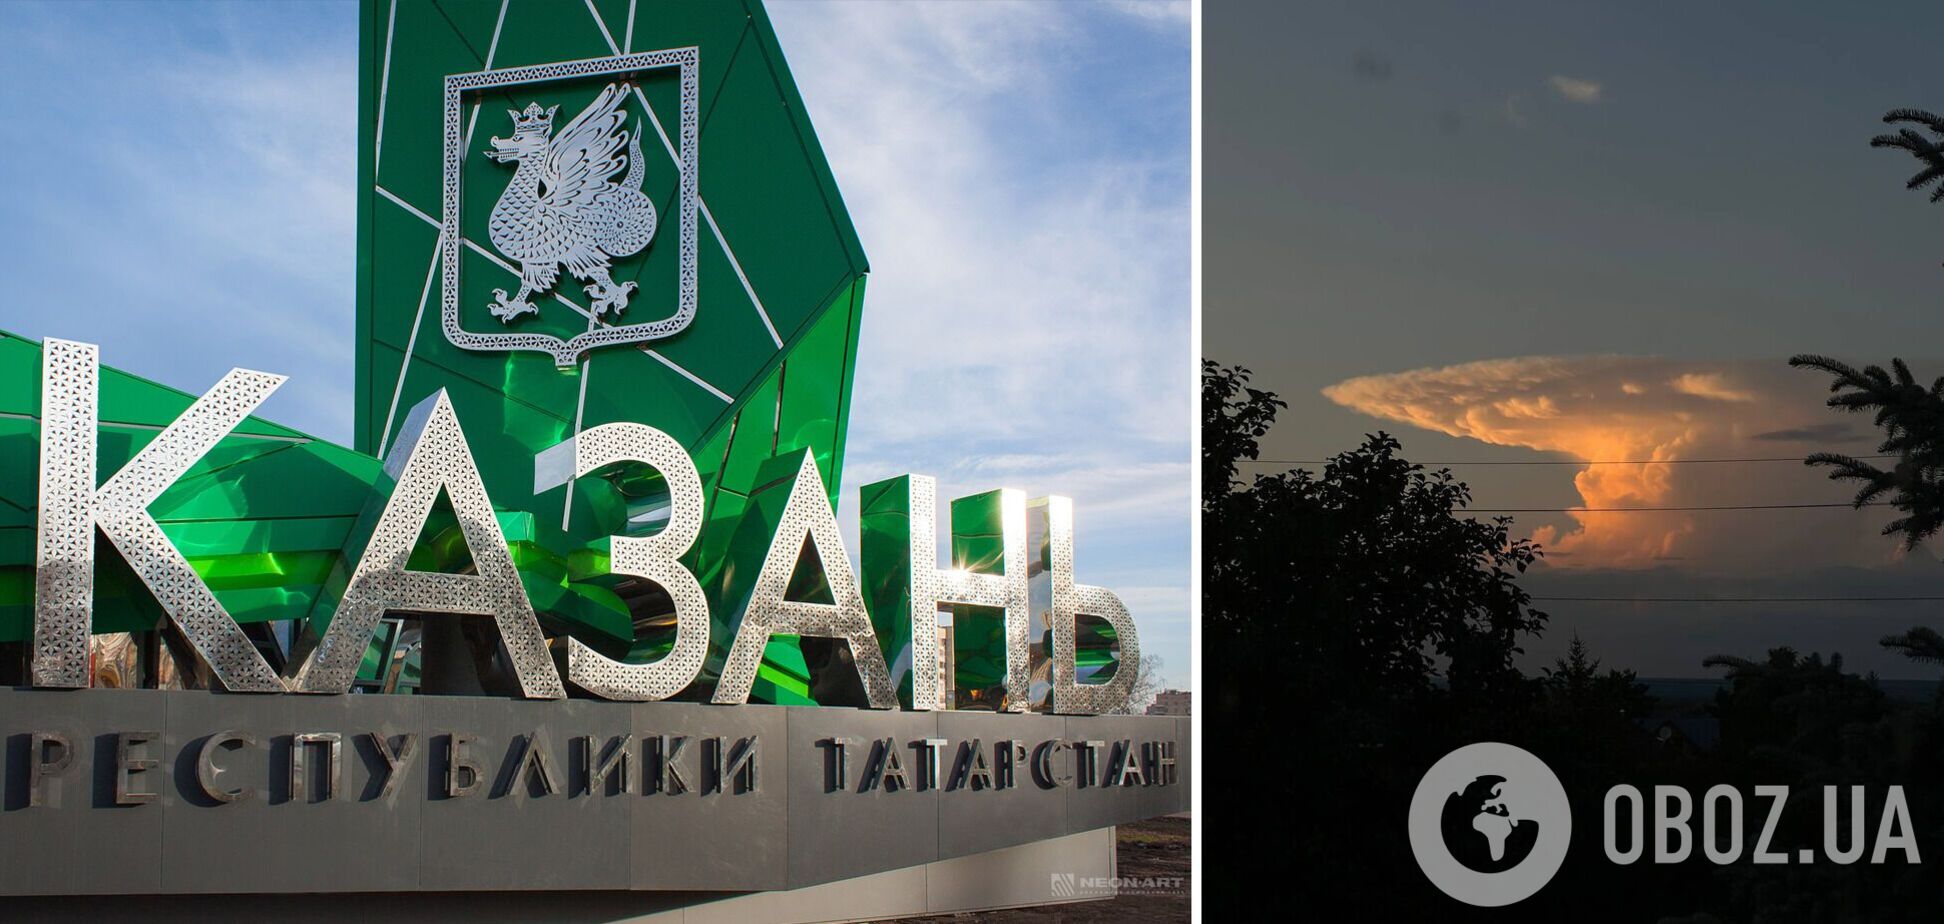 Росіян налякала хмара у вигляді ядерного гриба: явище спостерігали в небі над Казанню. Фото і відео 